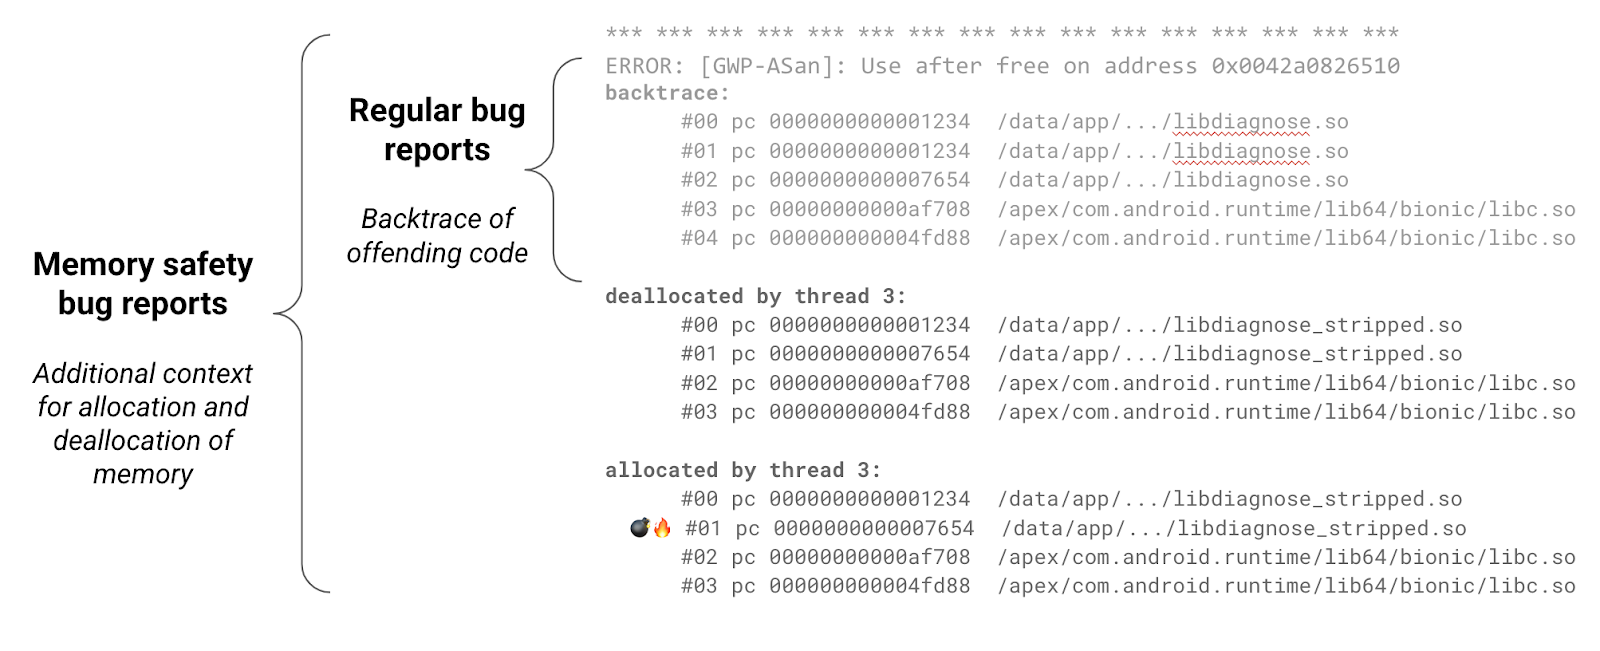 Exemplo de um relatório de bug gerado pela ferramenta de segurança de memória